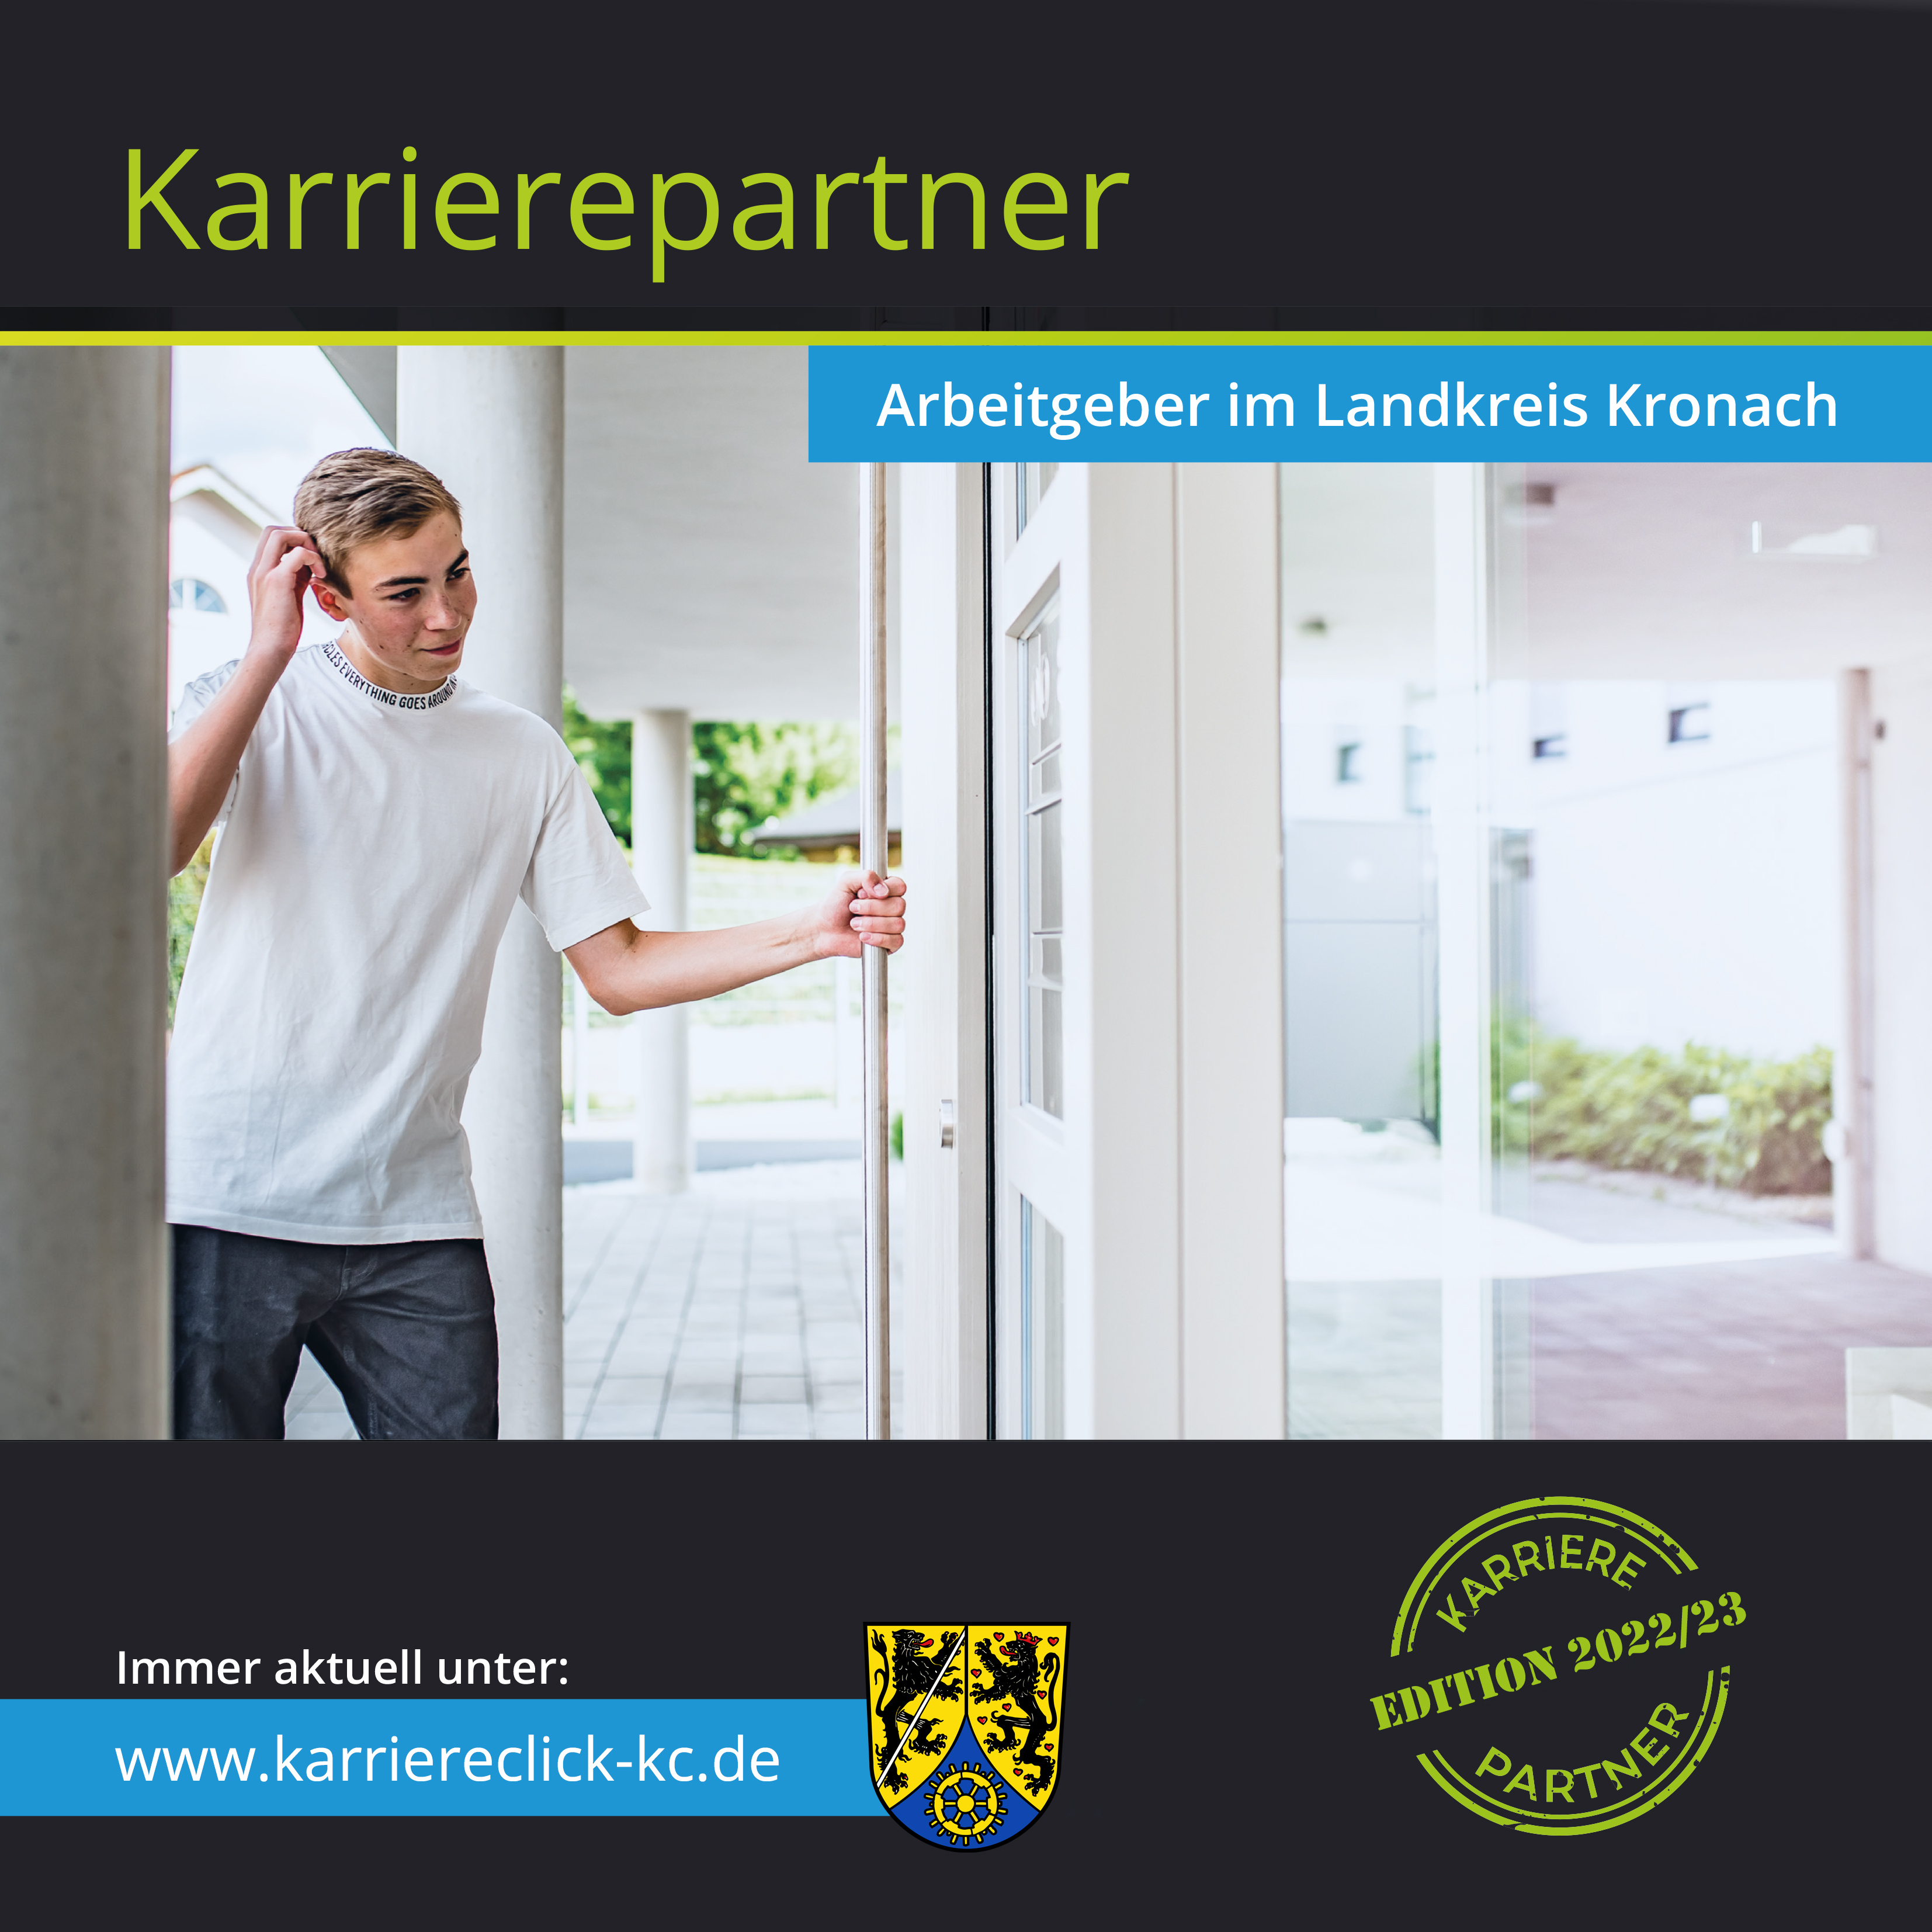 Firmenbroschüre „Karrierepartner – Arbeitgeber im Landkreis Kronach“ wird aktualisiert